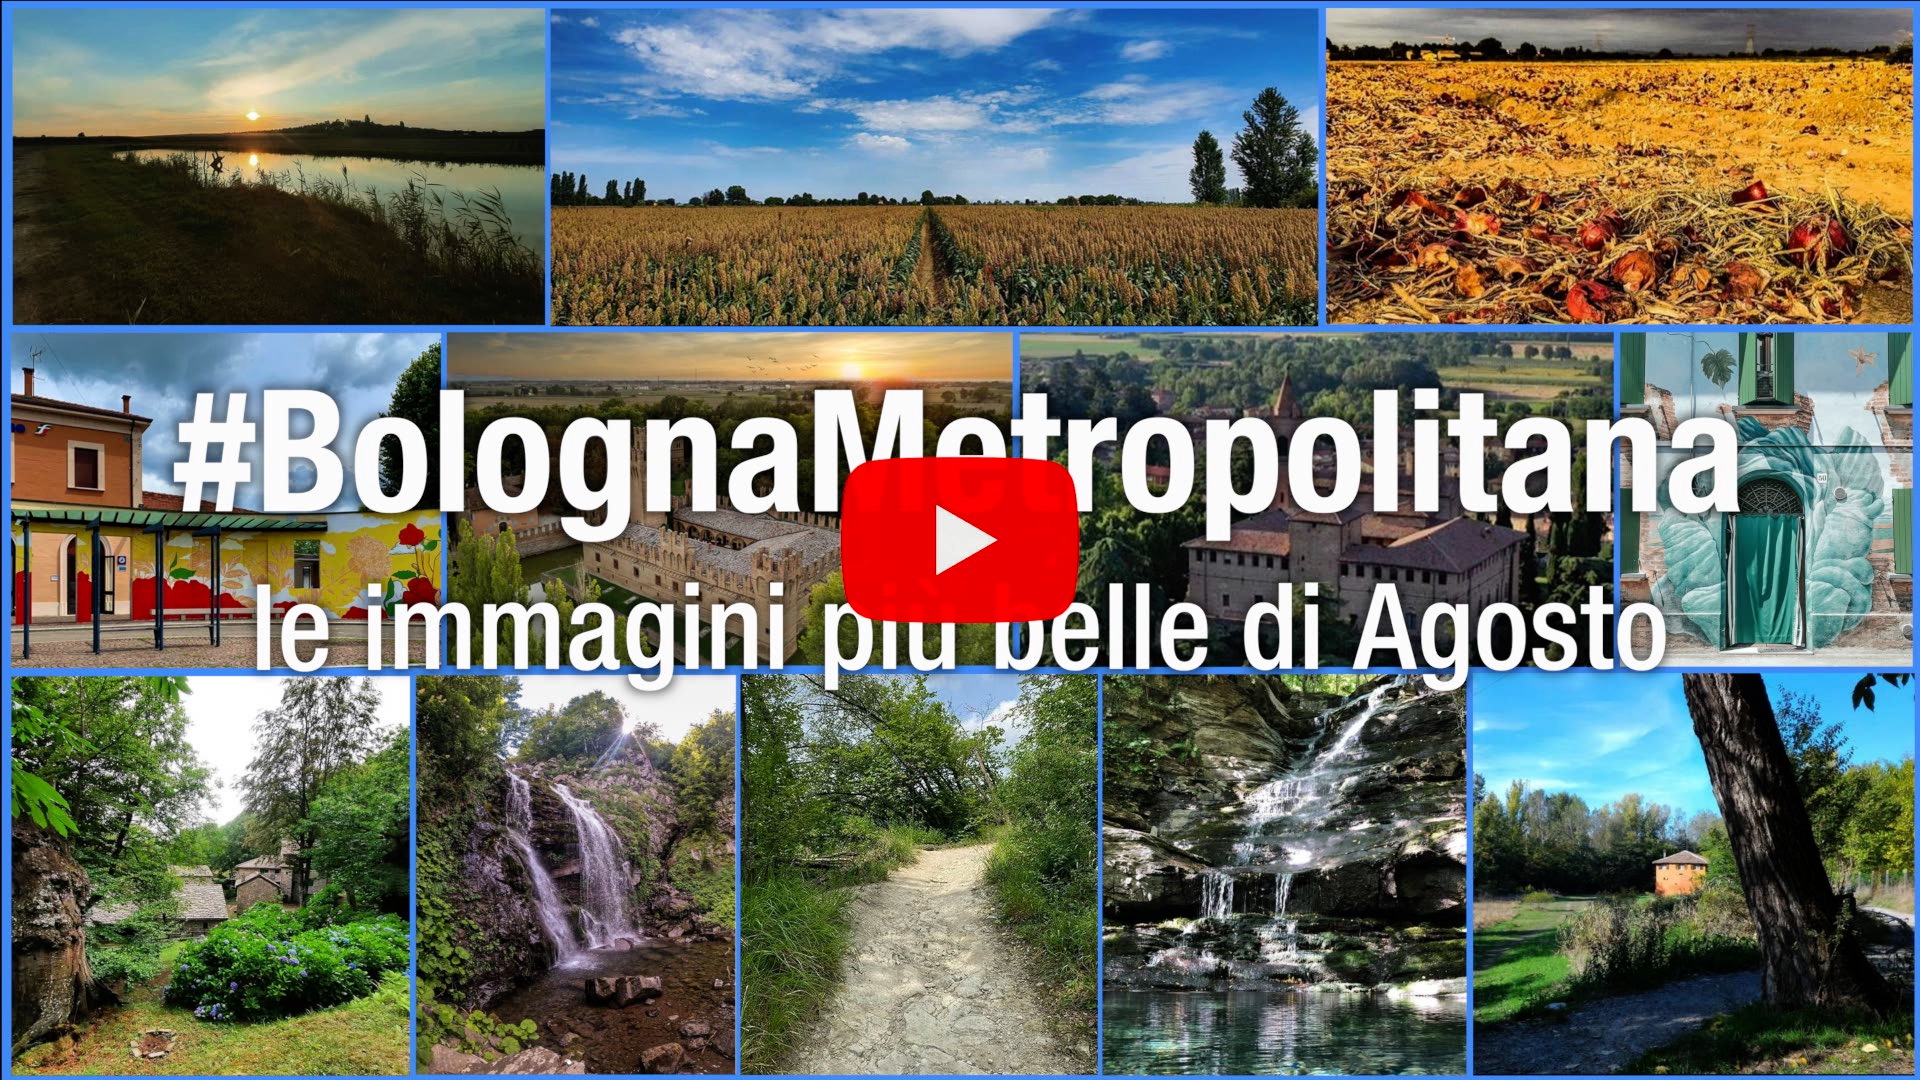 #BolognaMetropolitana - Le immagini più belle di agosto 2020